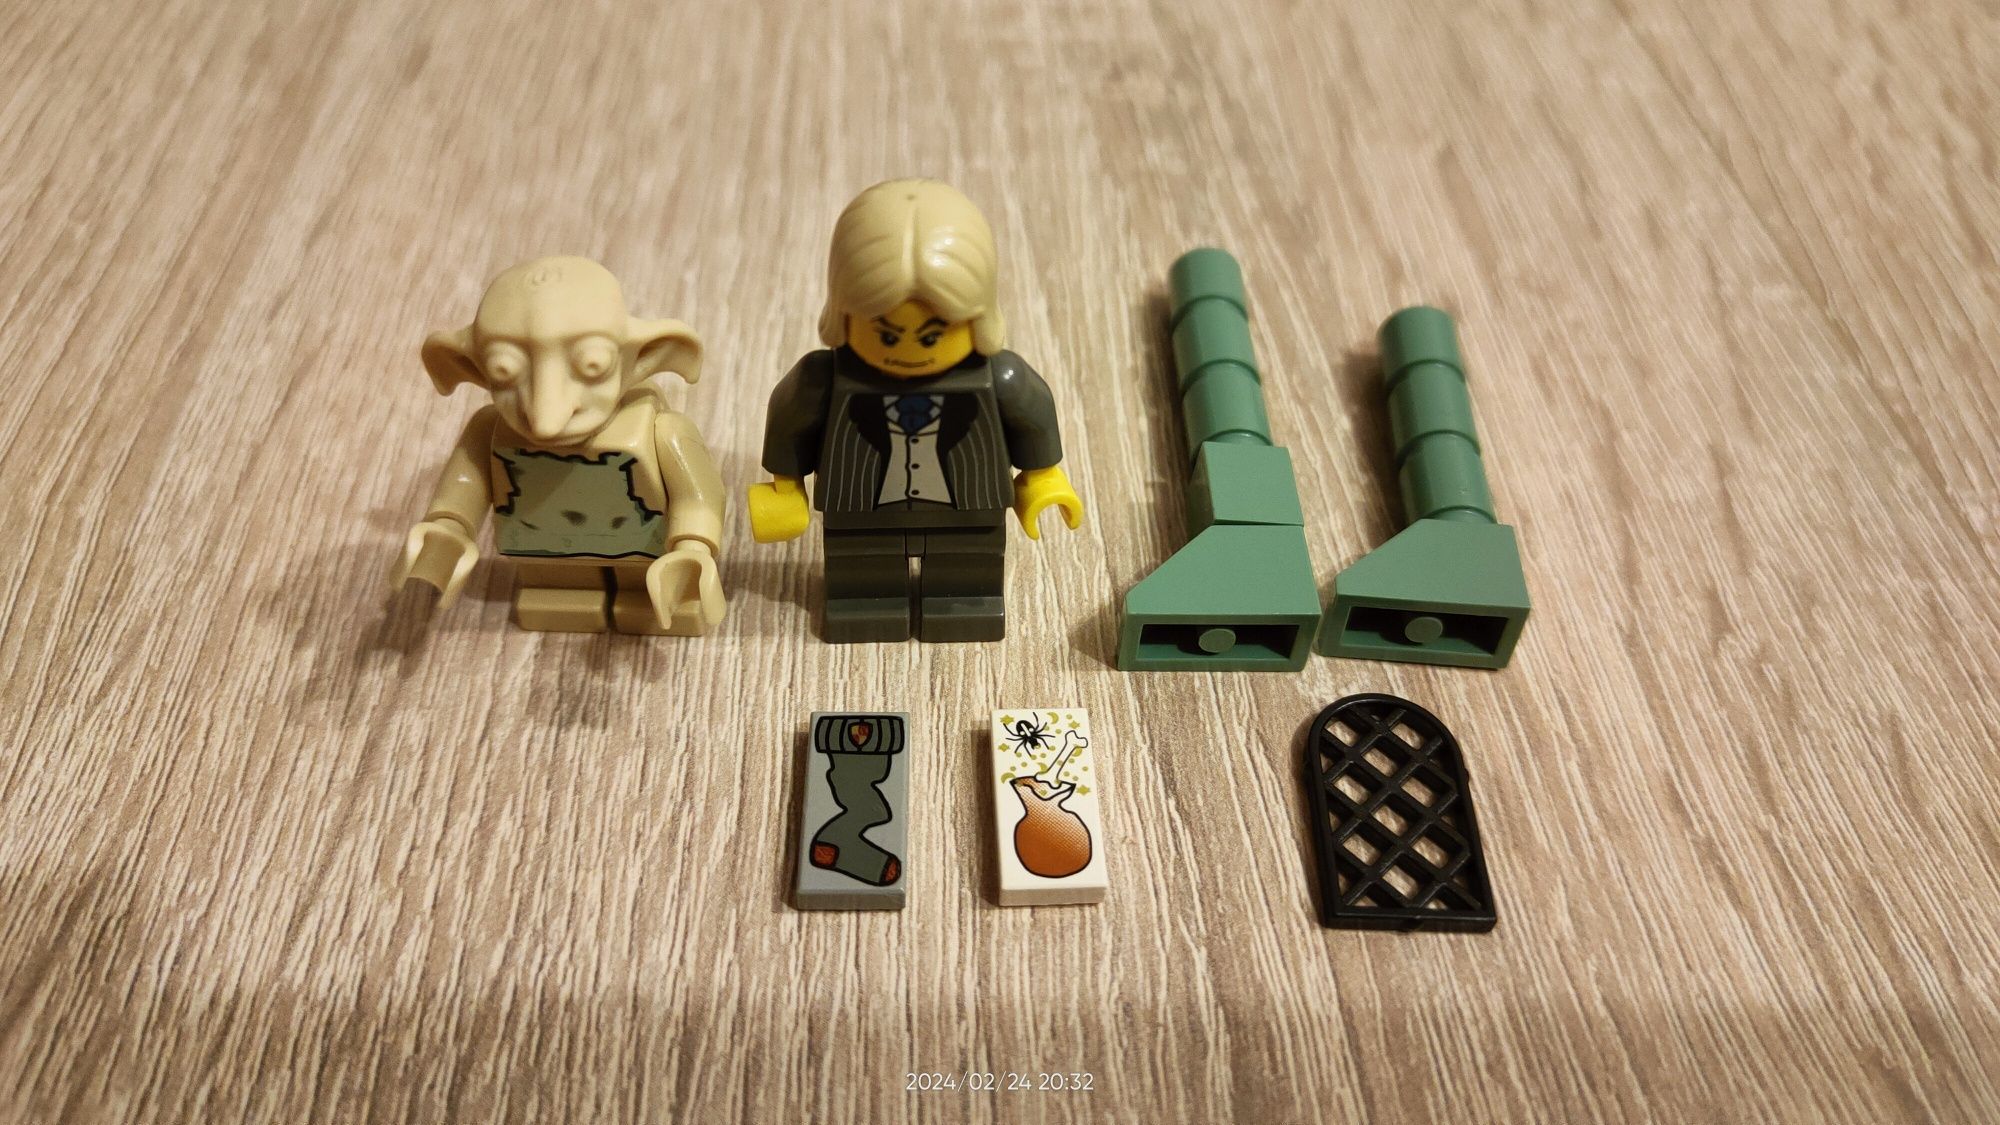 Zgredek i Lucjusz Malfoy z zestawu 4731 LEGO.